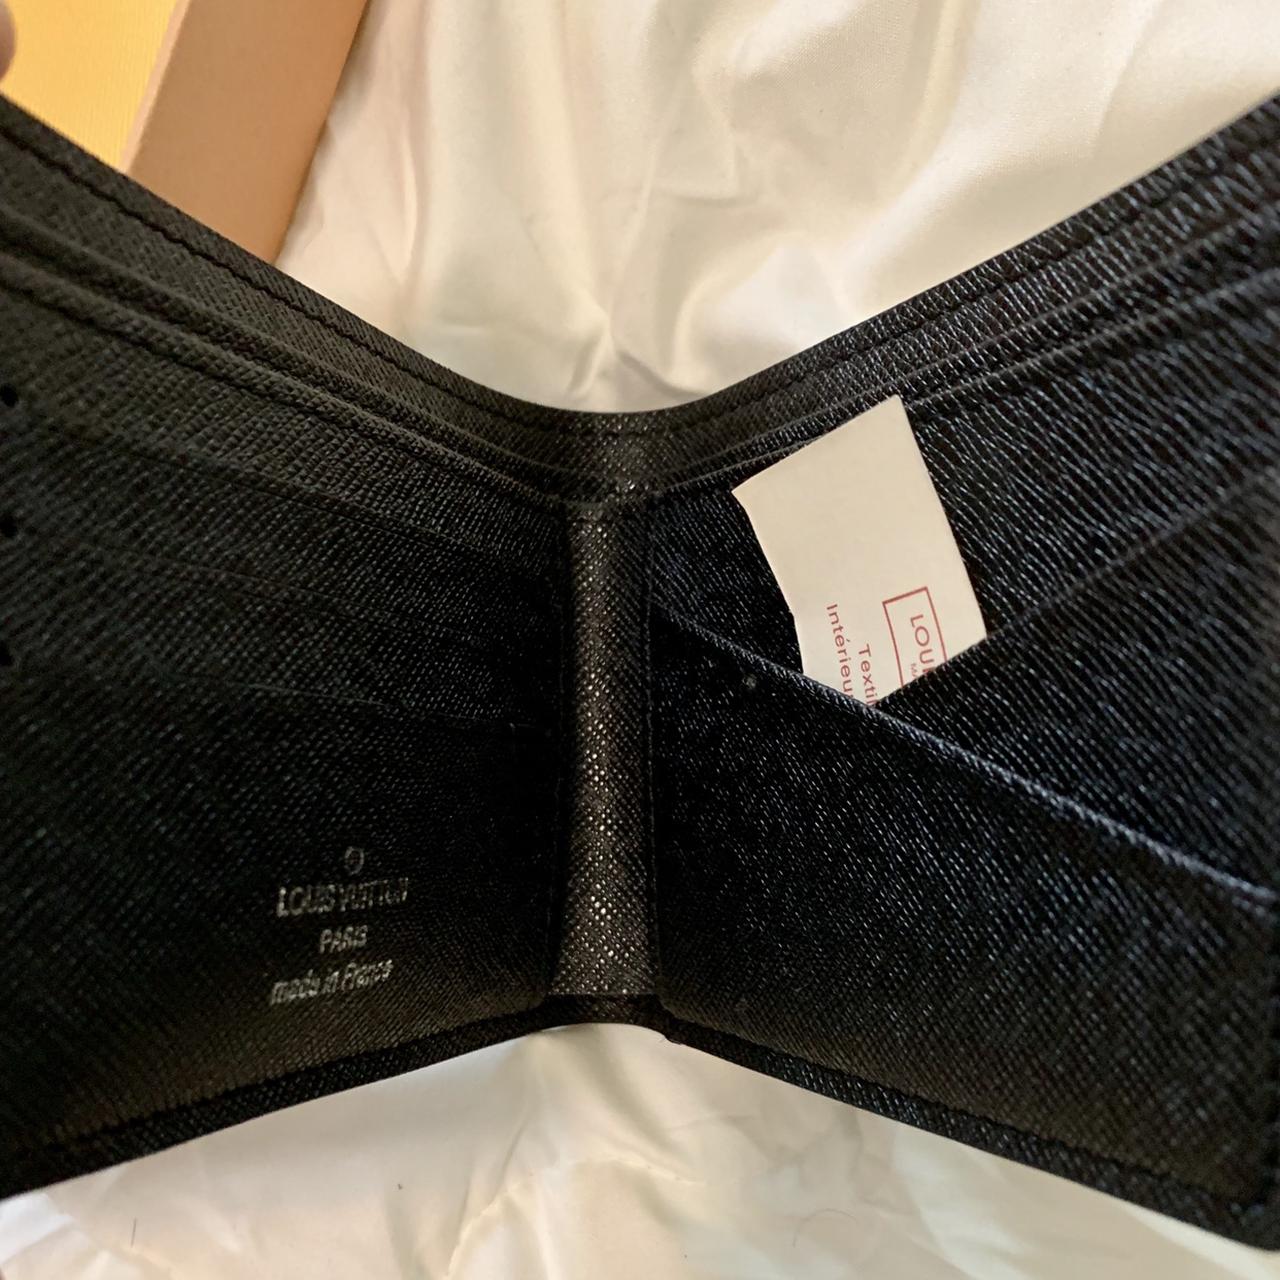 Supreme Louis Vuitton Wallet. authentic. H/o: 900 - Depop